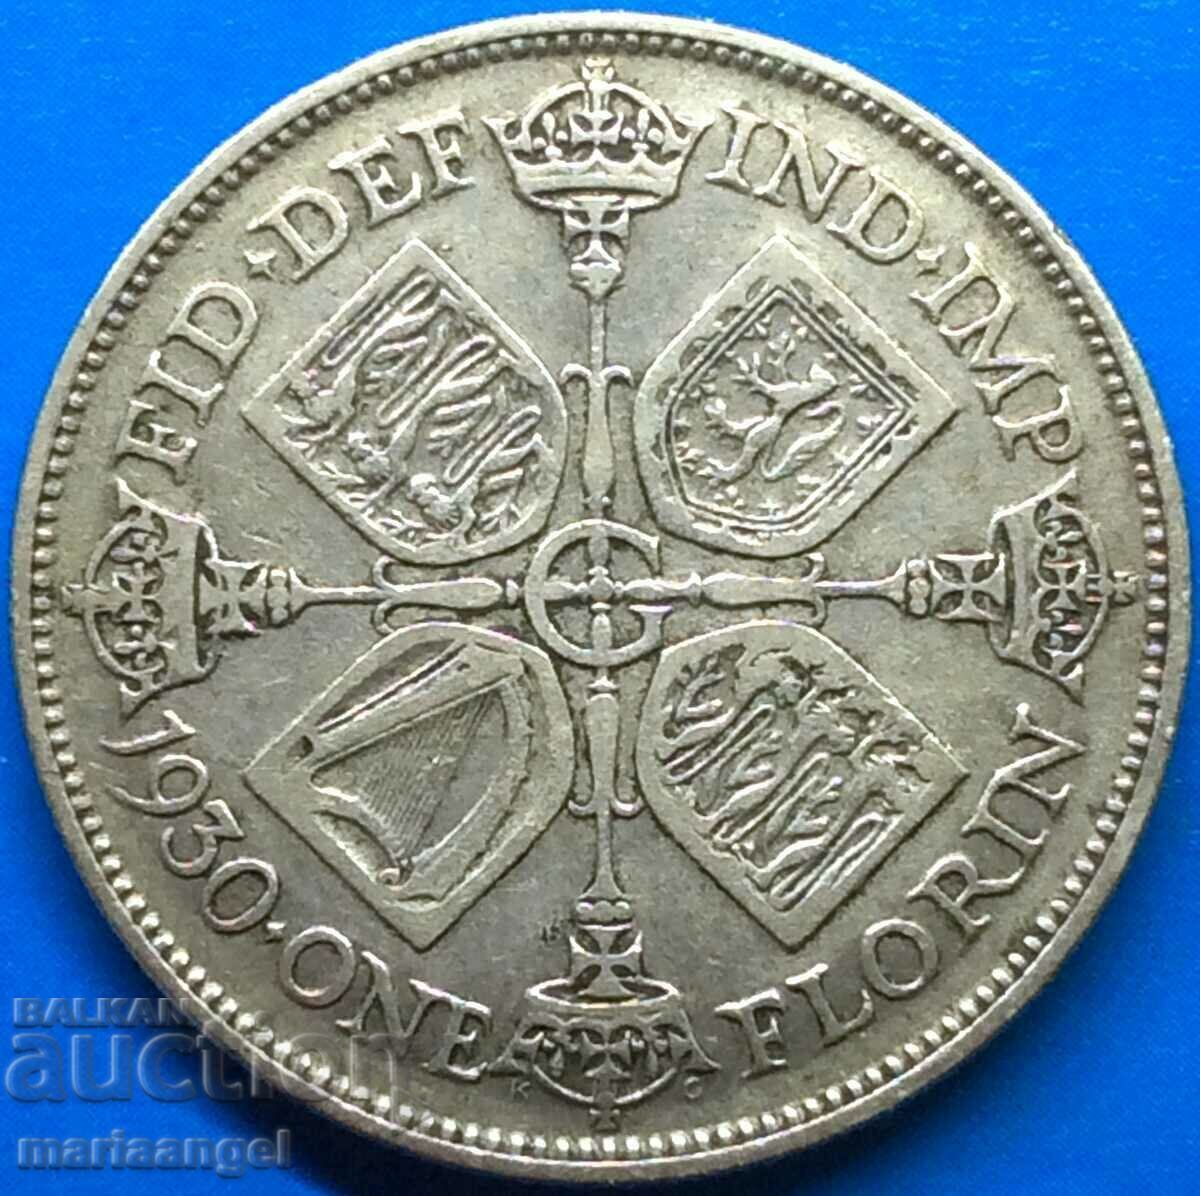 Великобритания 1 флорин 1930 Джордж  V  голямо сребро